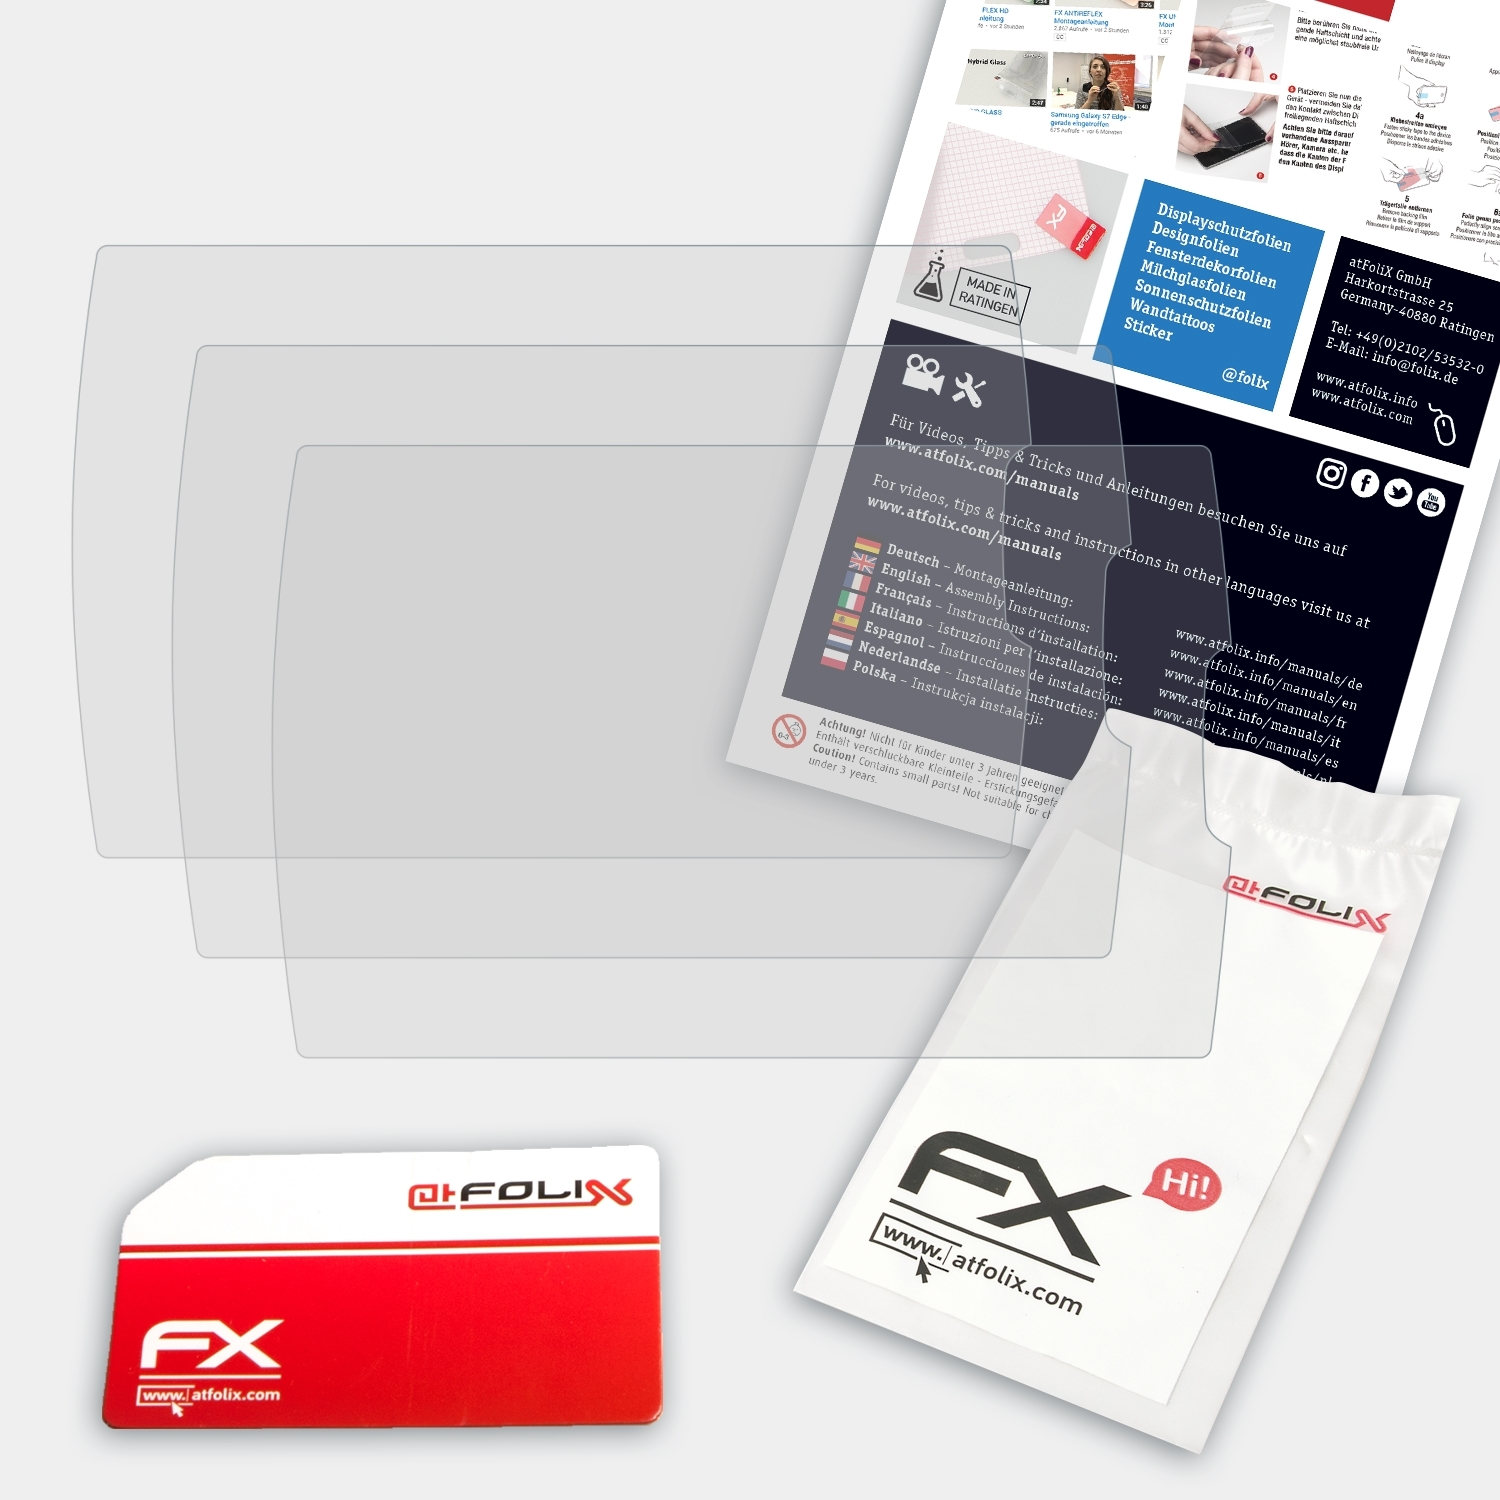 ATFOLIX 3x FX-Antireflex Displayschutz(für Garmin 7sv) Plus Striker